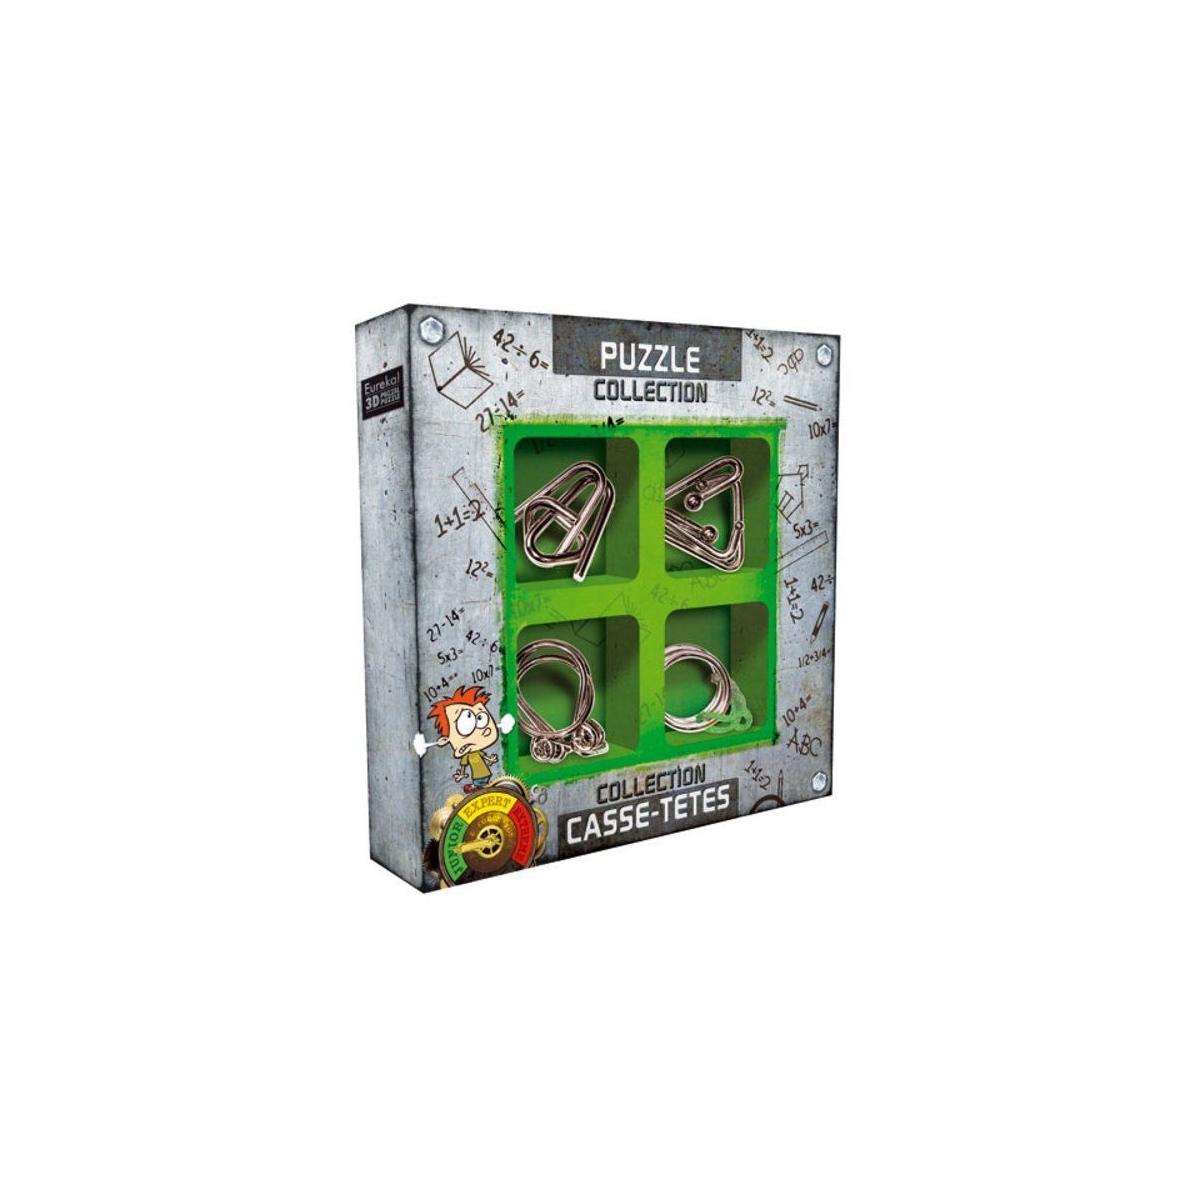 EUREKA 52473361 - Metallpuzzle-Set 4-teilig Junior Puzzle